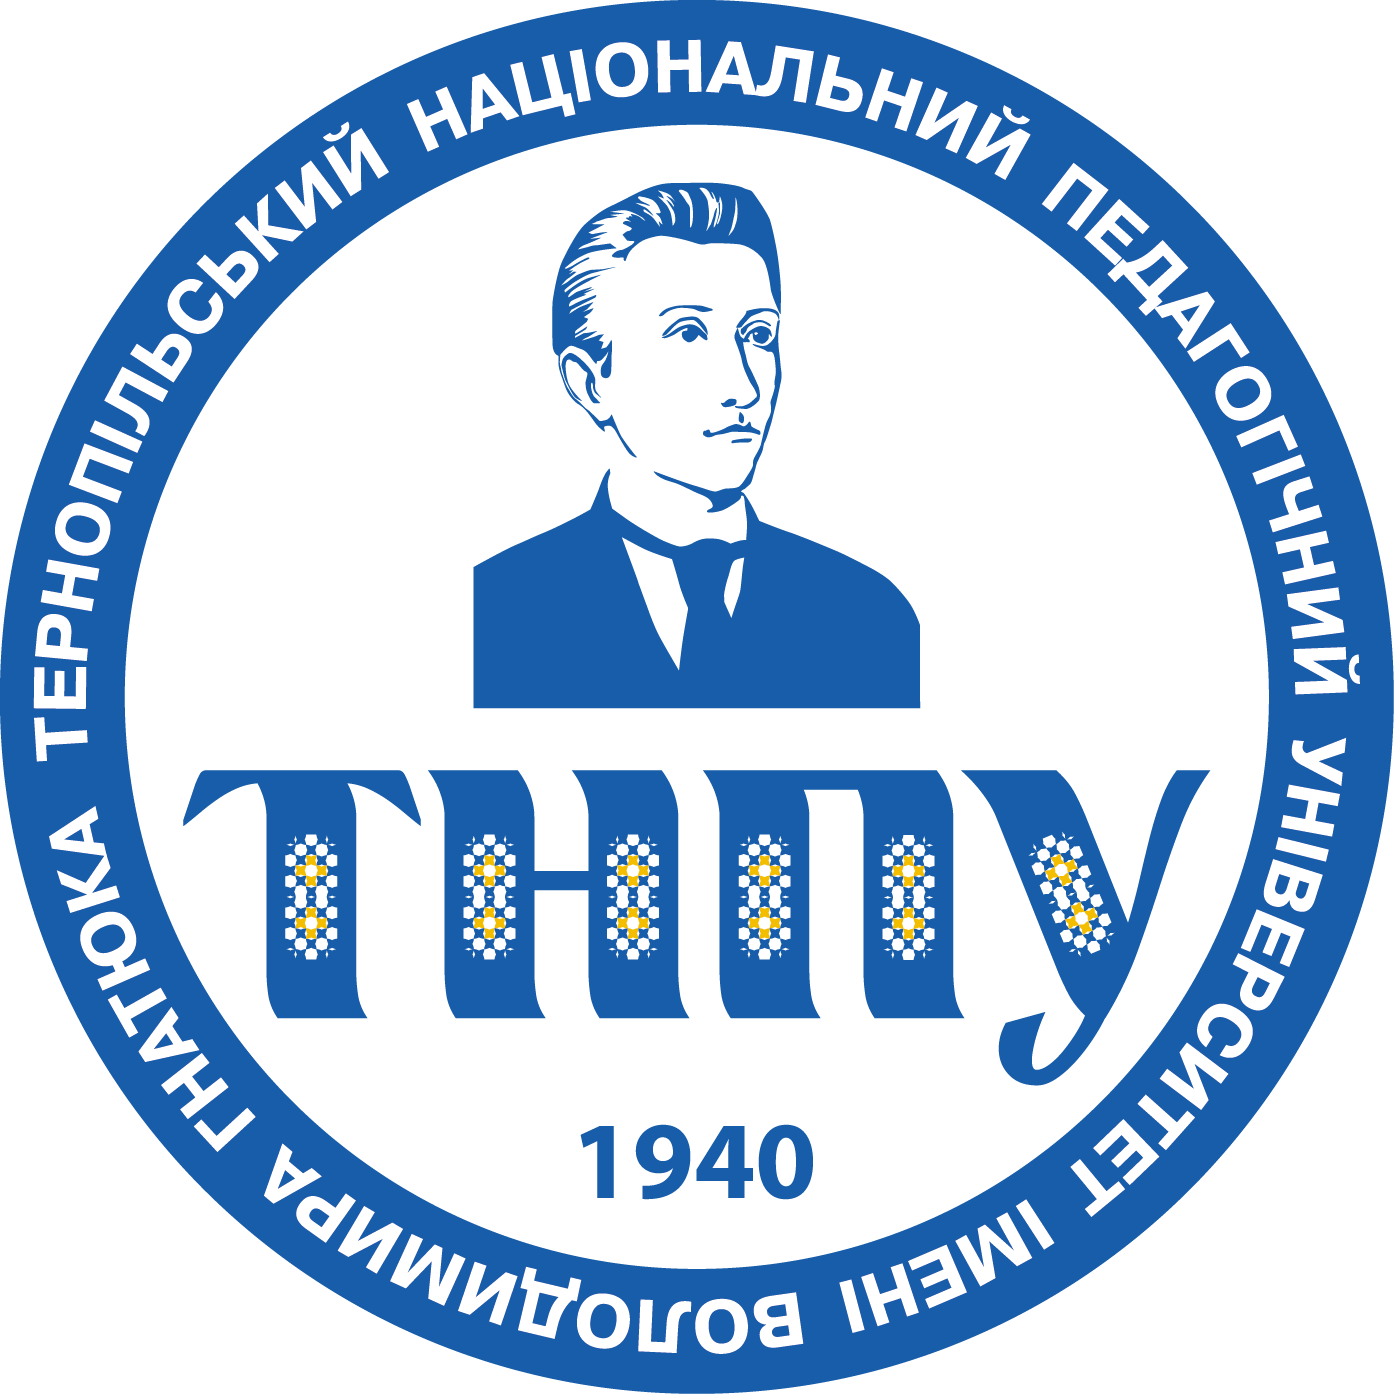 Логотип ТНПУ